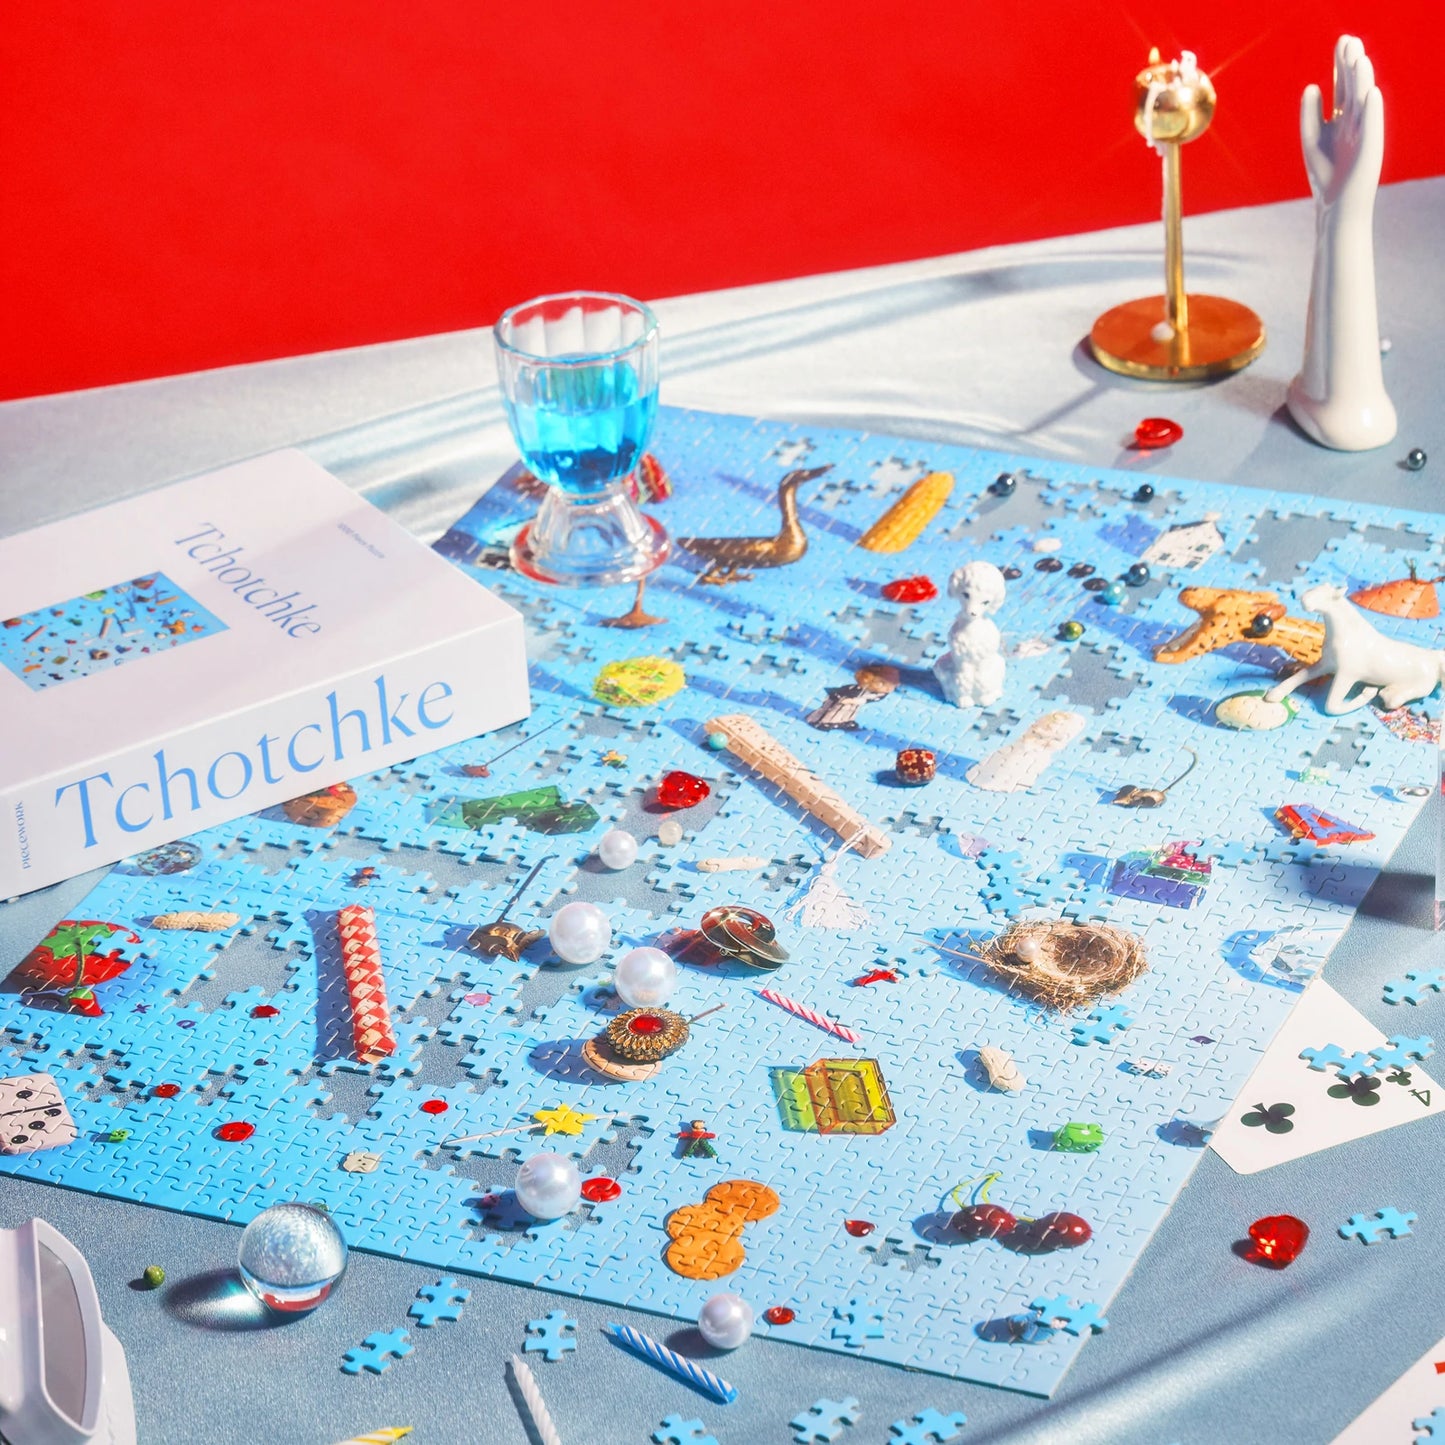 Tchotchke | 1000 Piece Jigsaw Puzzle